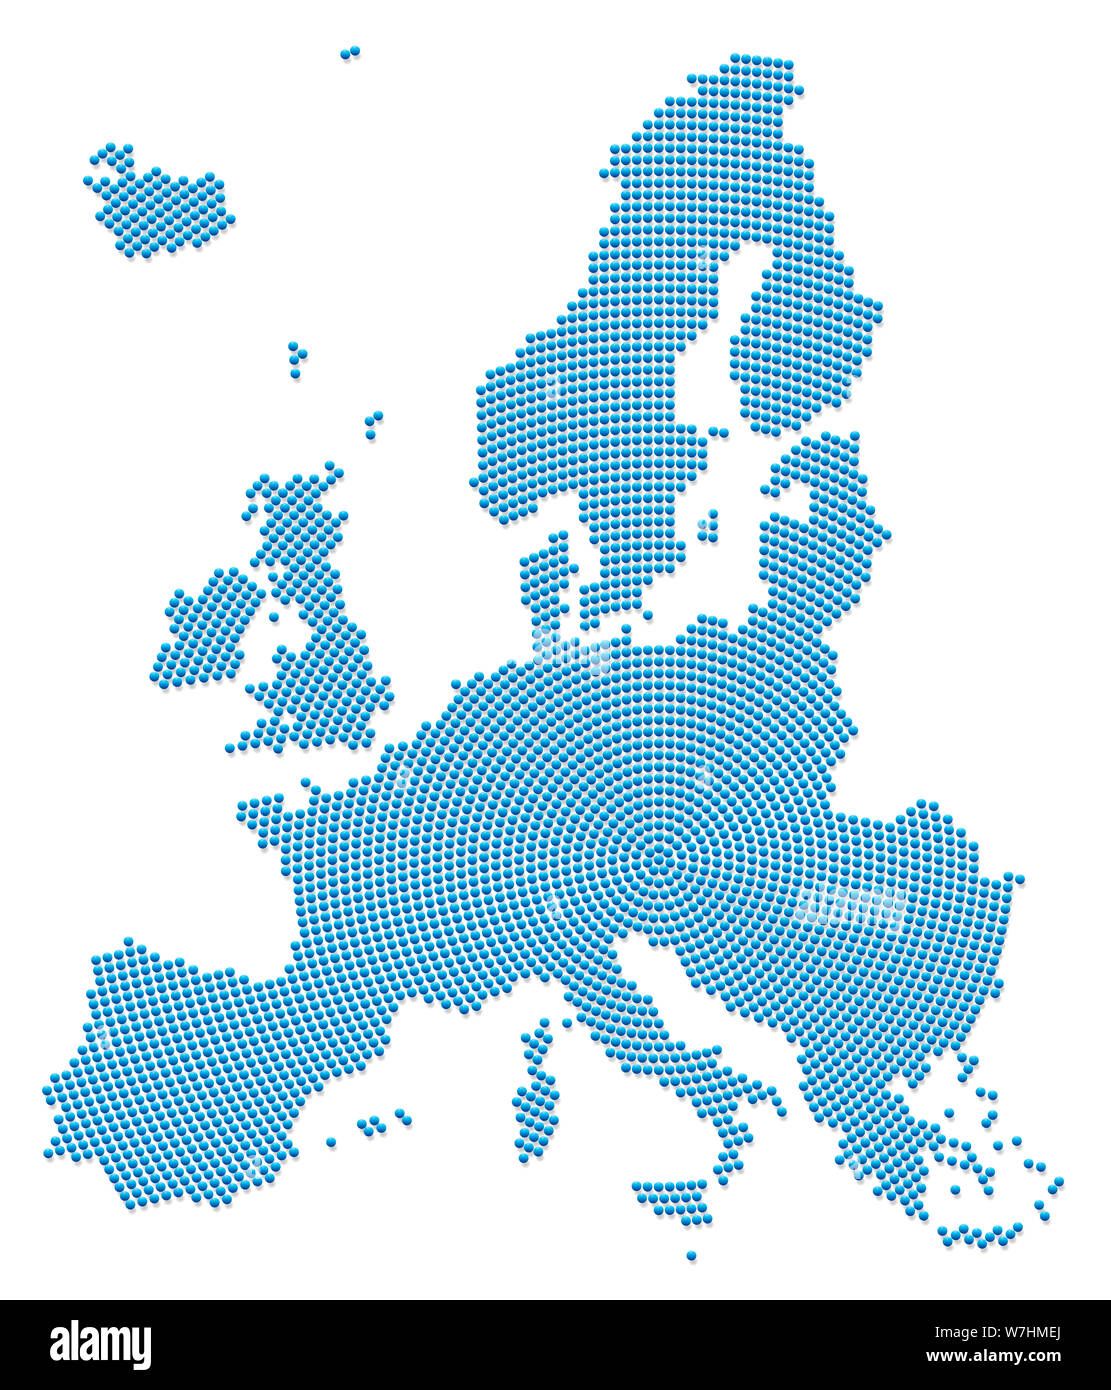 Mapa de Europa. Patrón azul con microesferas de hierro 3d va radial desde el centro hacia fuera para formar la silueta de la zona de la UE . ilustración en blanco. Foto de stock